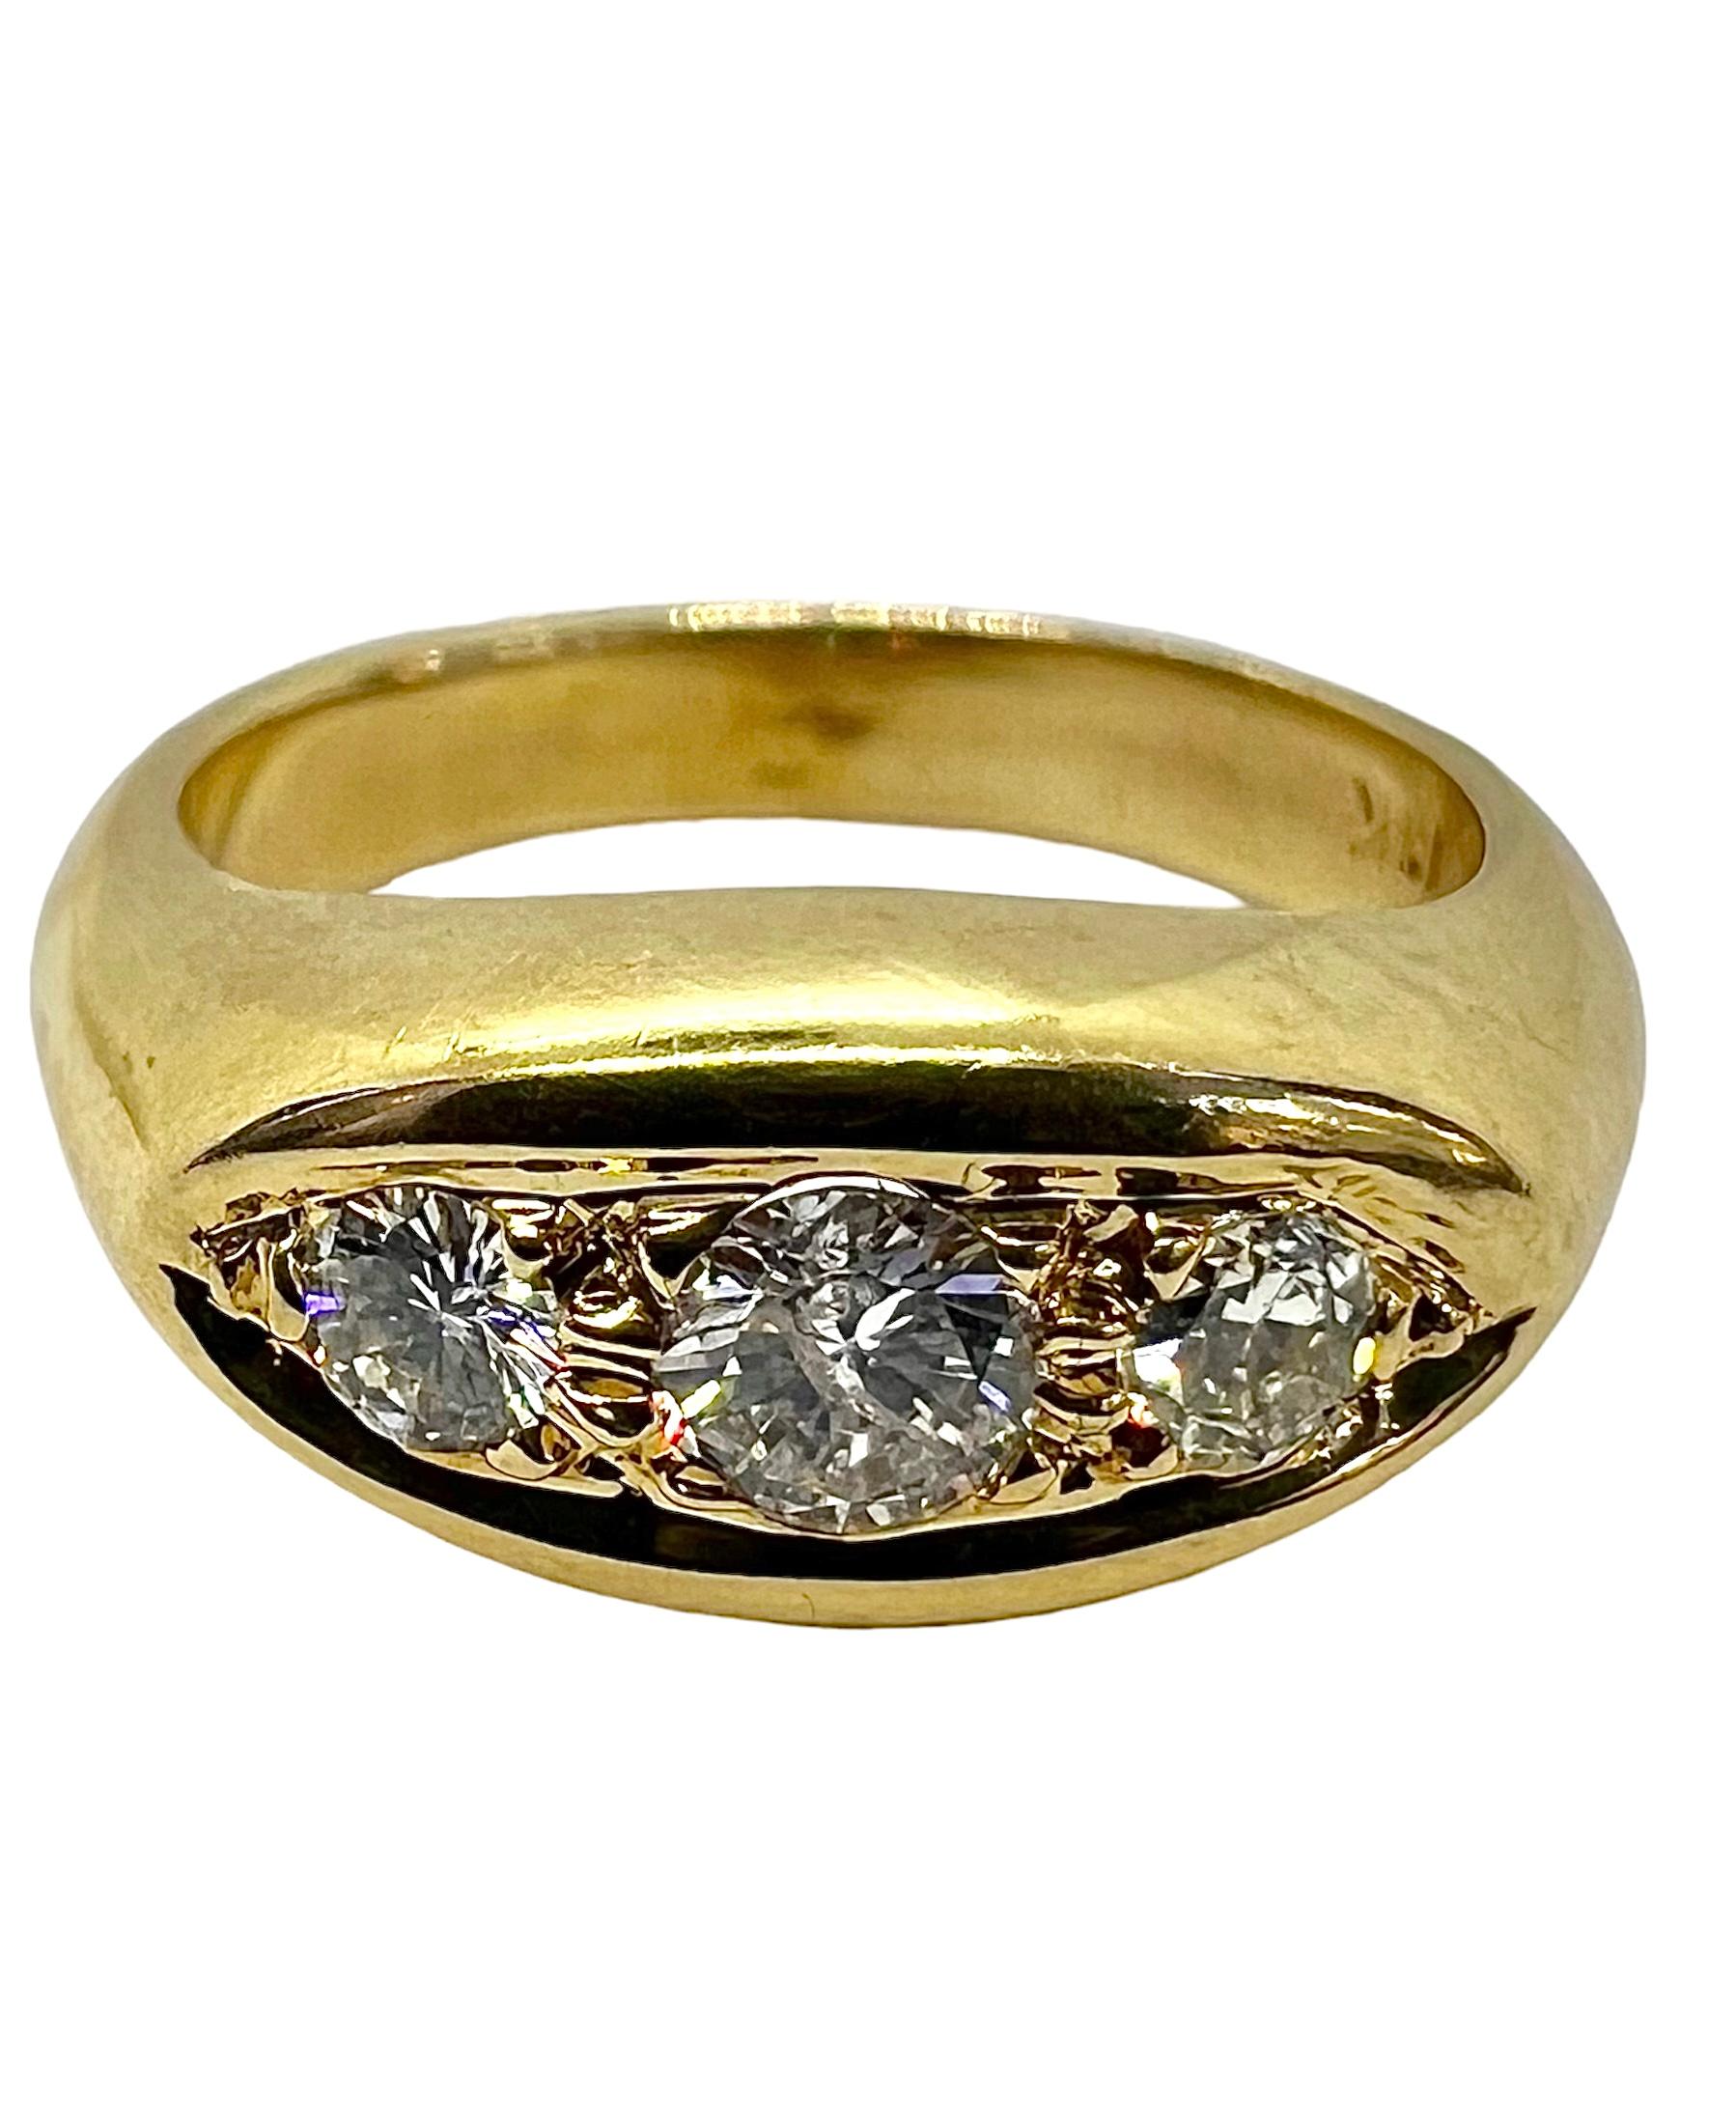 Ring aus 14K Gelbgold mit 3 runden Diamanten.

Sophia D von Joseph Dardashti LTD ist seit 35 Jahren weltweit bekannt und lässt sich vom klassischen Art-Déco-Design inspirieren, das mit modernen Fertigungstechniken verschmilzt. 